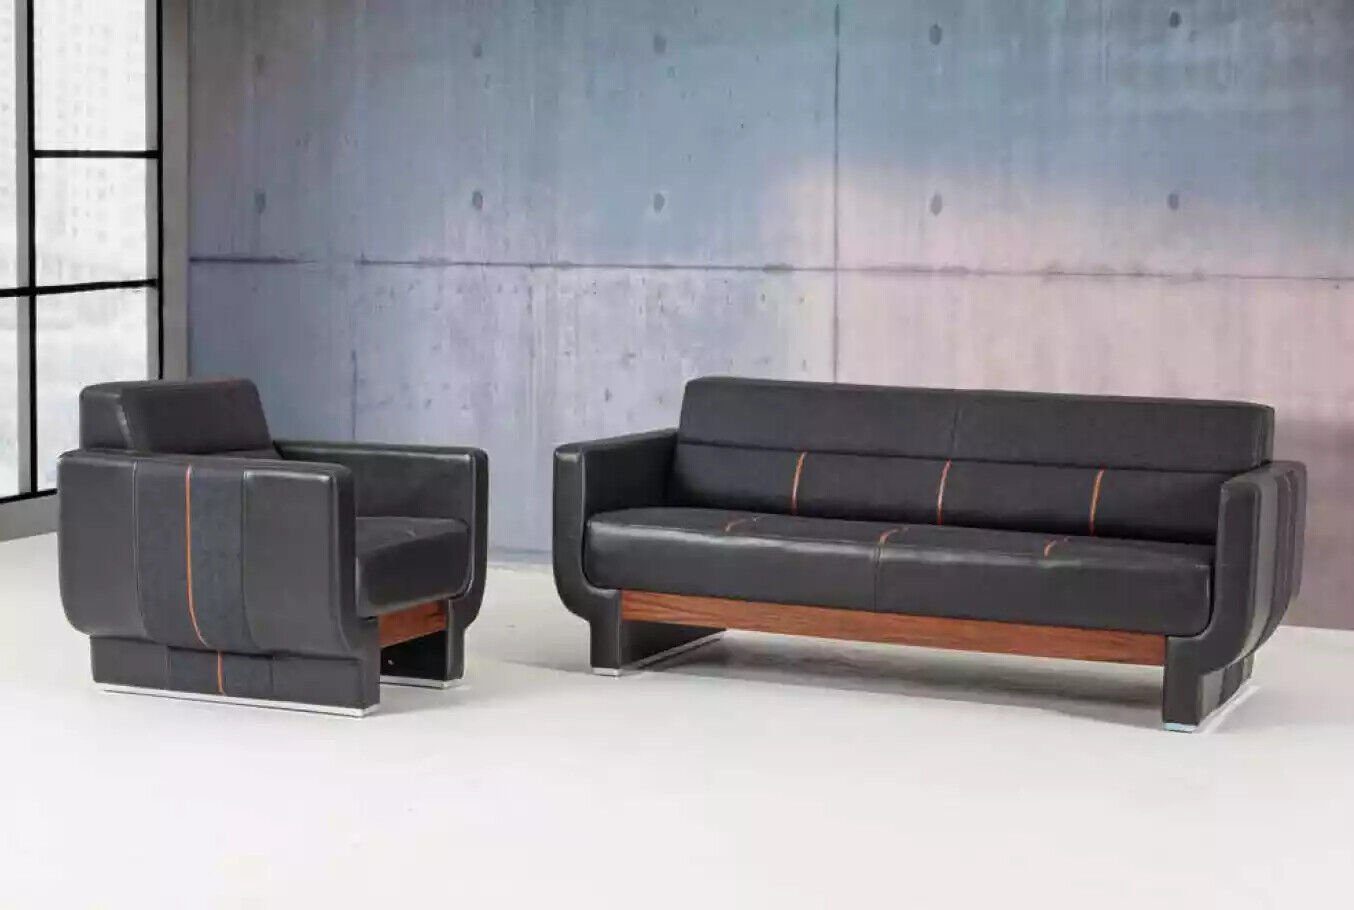 JVmoebel Sofa Schwarze Dreisitzer Europe Couch In Büroeinrichtung Made Polster, Ledermöbel Moderne